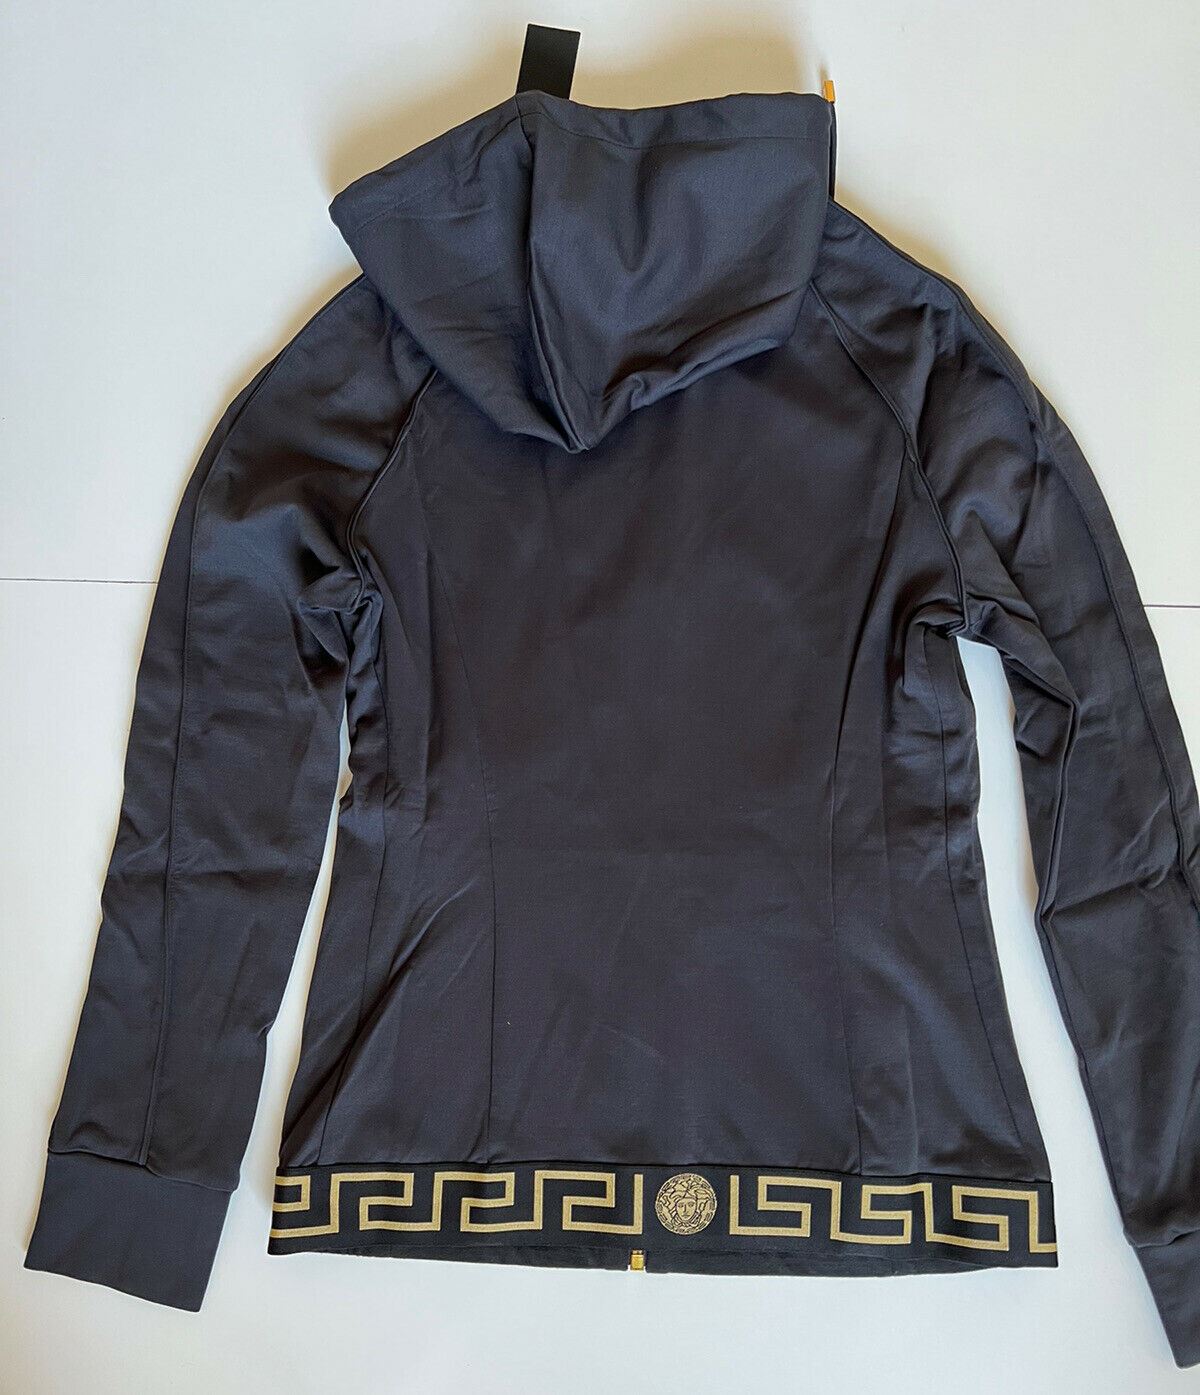 NWT $625 Versace Women's Zip Front Black Sweatshirt Hoodie Jacket 3 (M) Italy